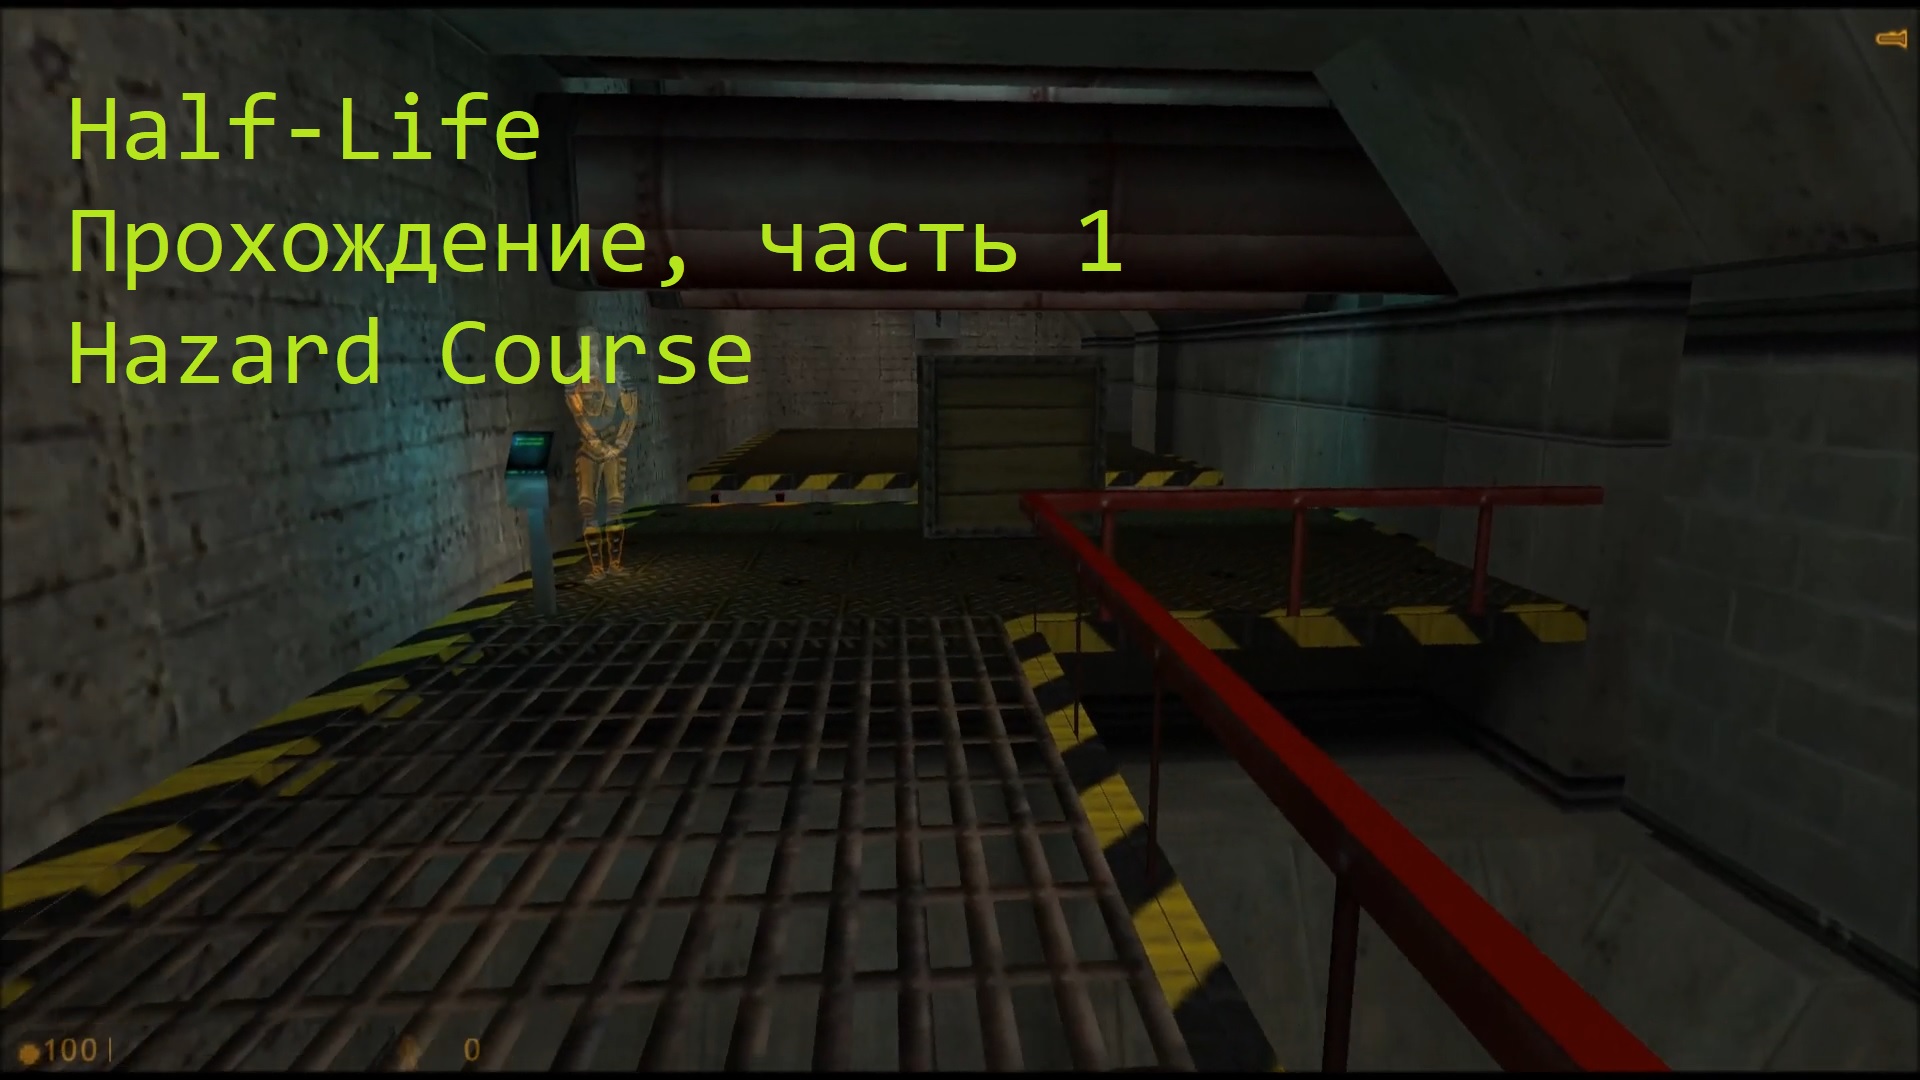 Half-Life, Прохождение, часть 1 - Hazard Course